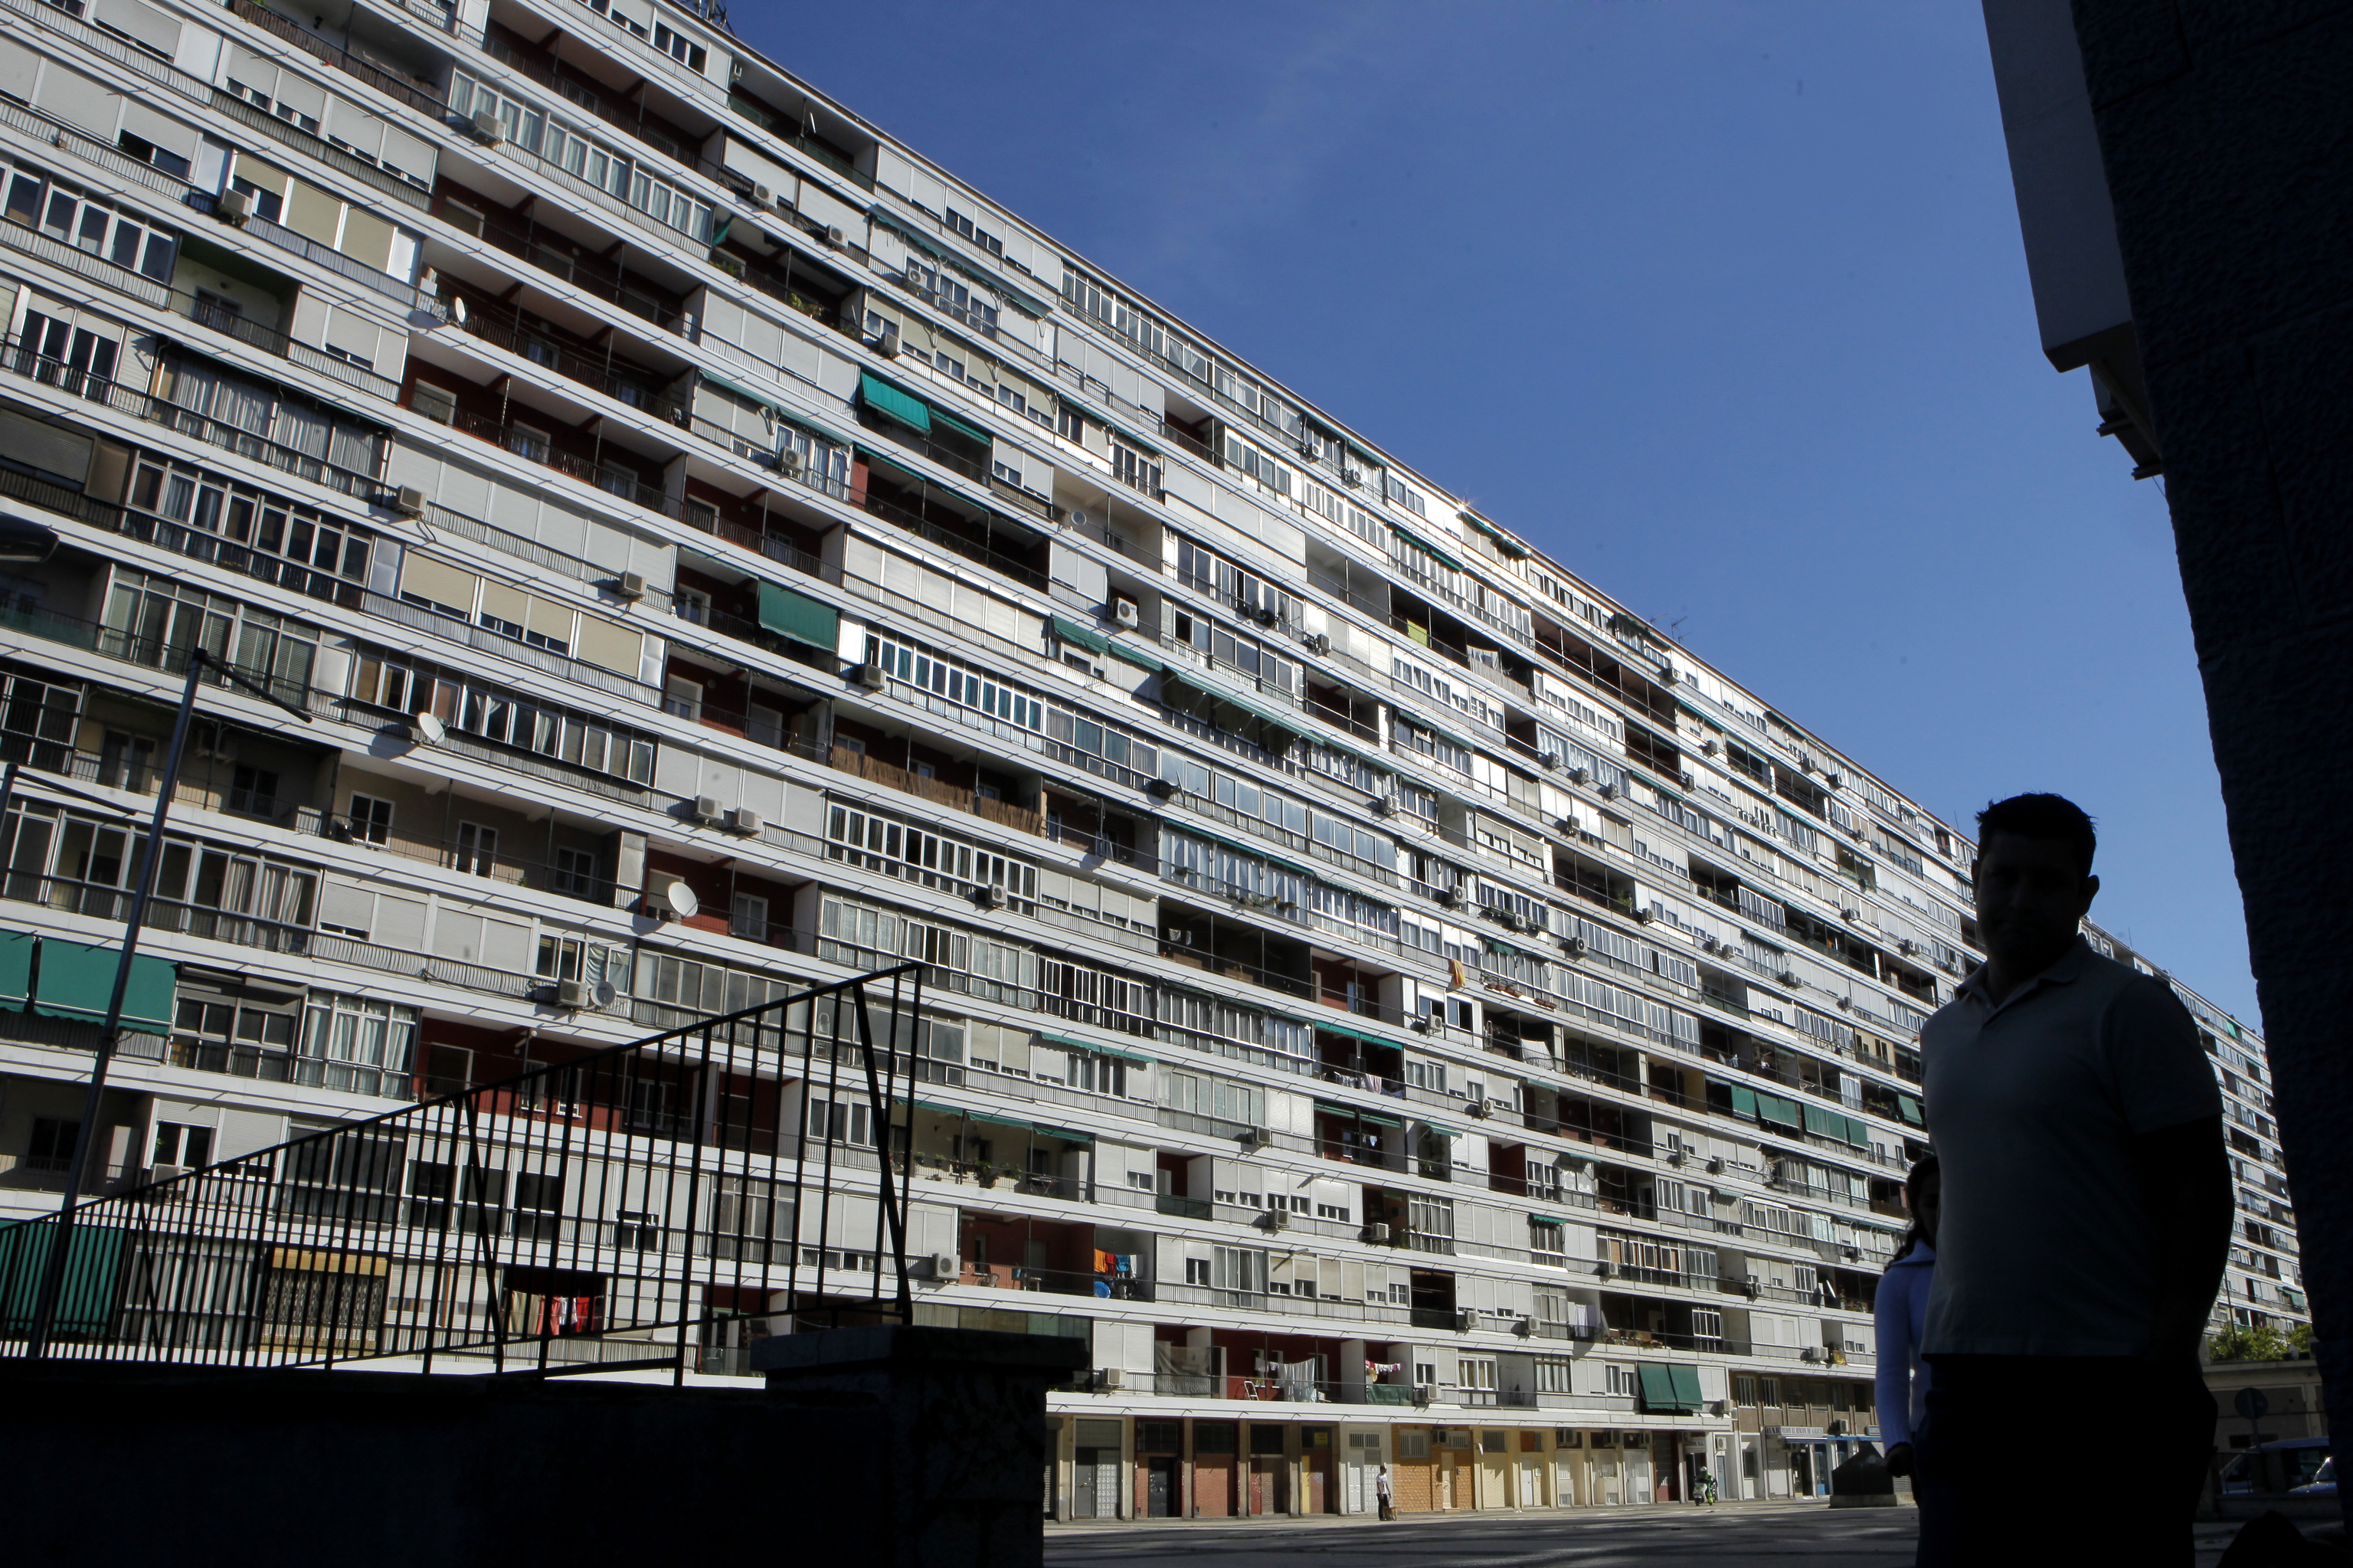 Edificio de viviendas en Madrid